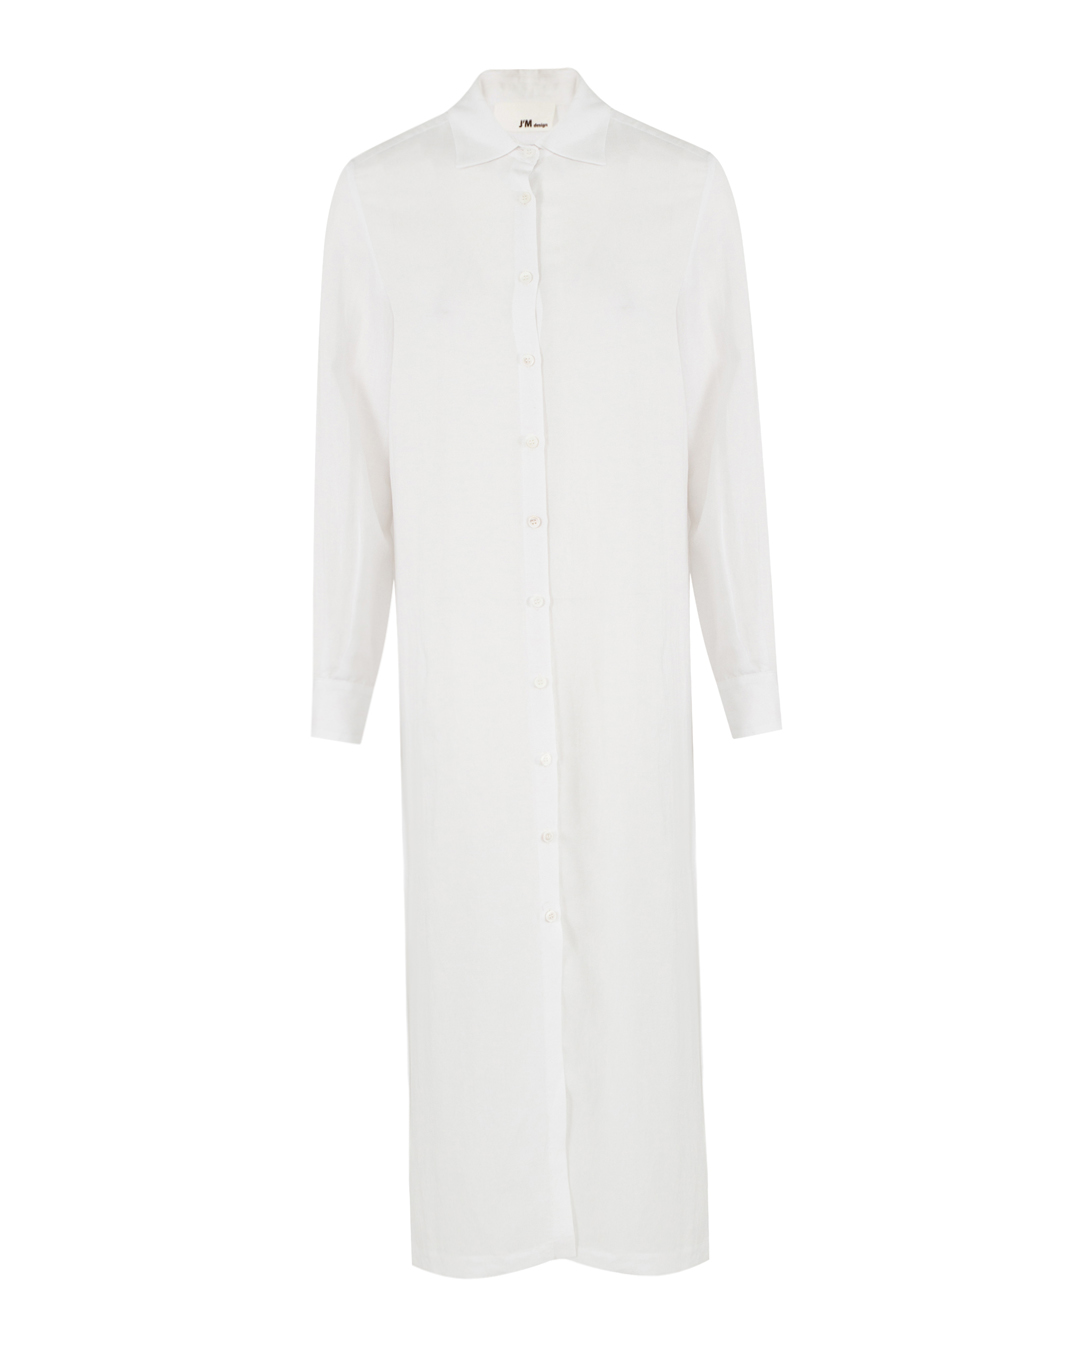 платье J.M design JM-CA207 белый s, размер s